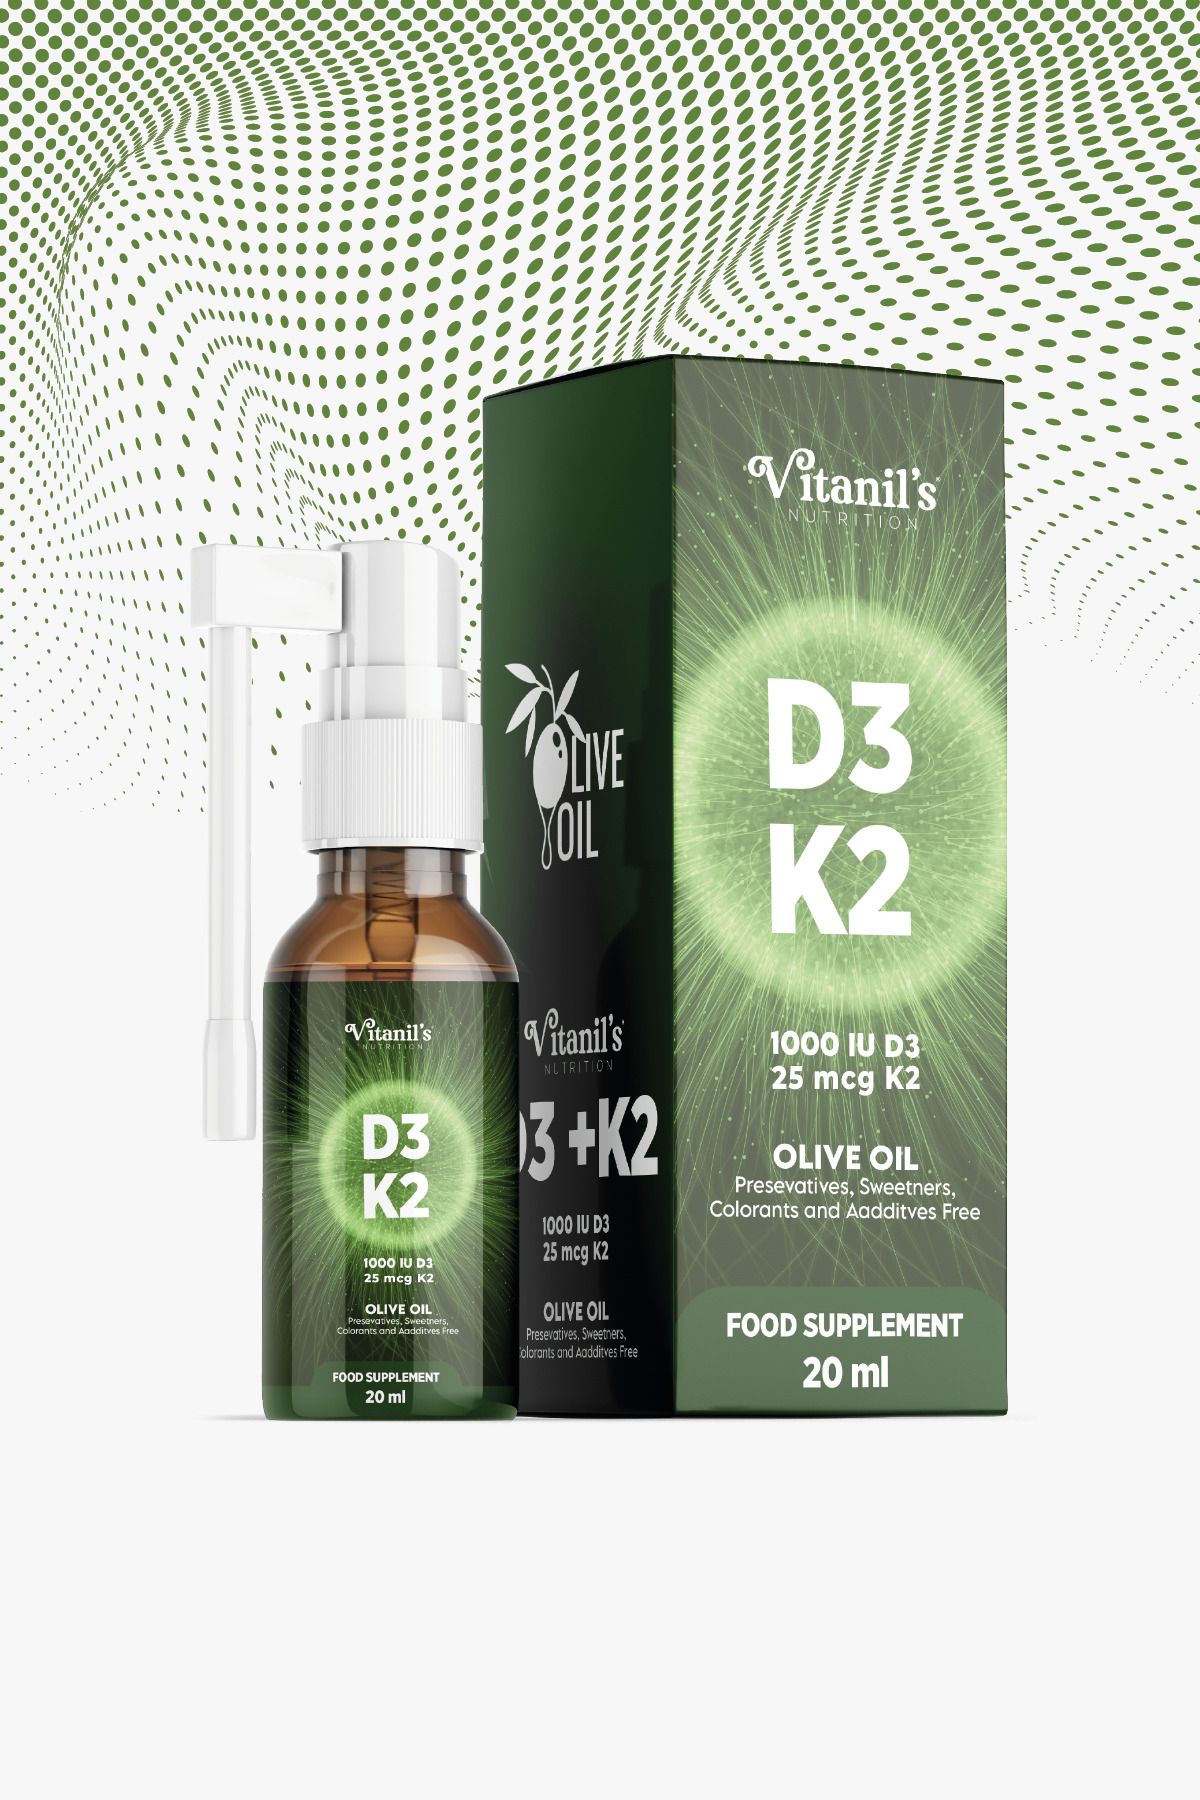 Vitanil's Nutrition D3 K2 Vitamini - 1000 Iu Vitamin D3 Ve 25 Mcg Vitamin K2 - 20 ml Sprey Form